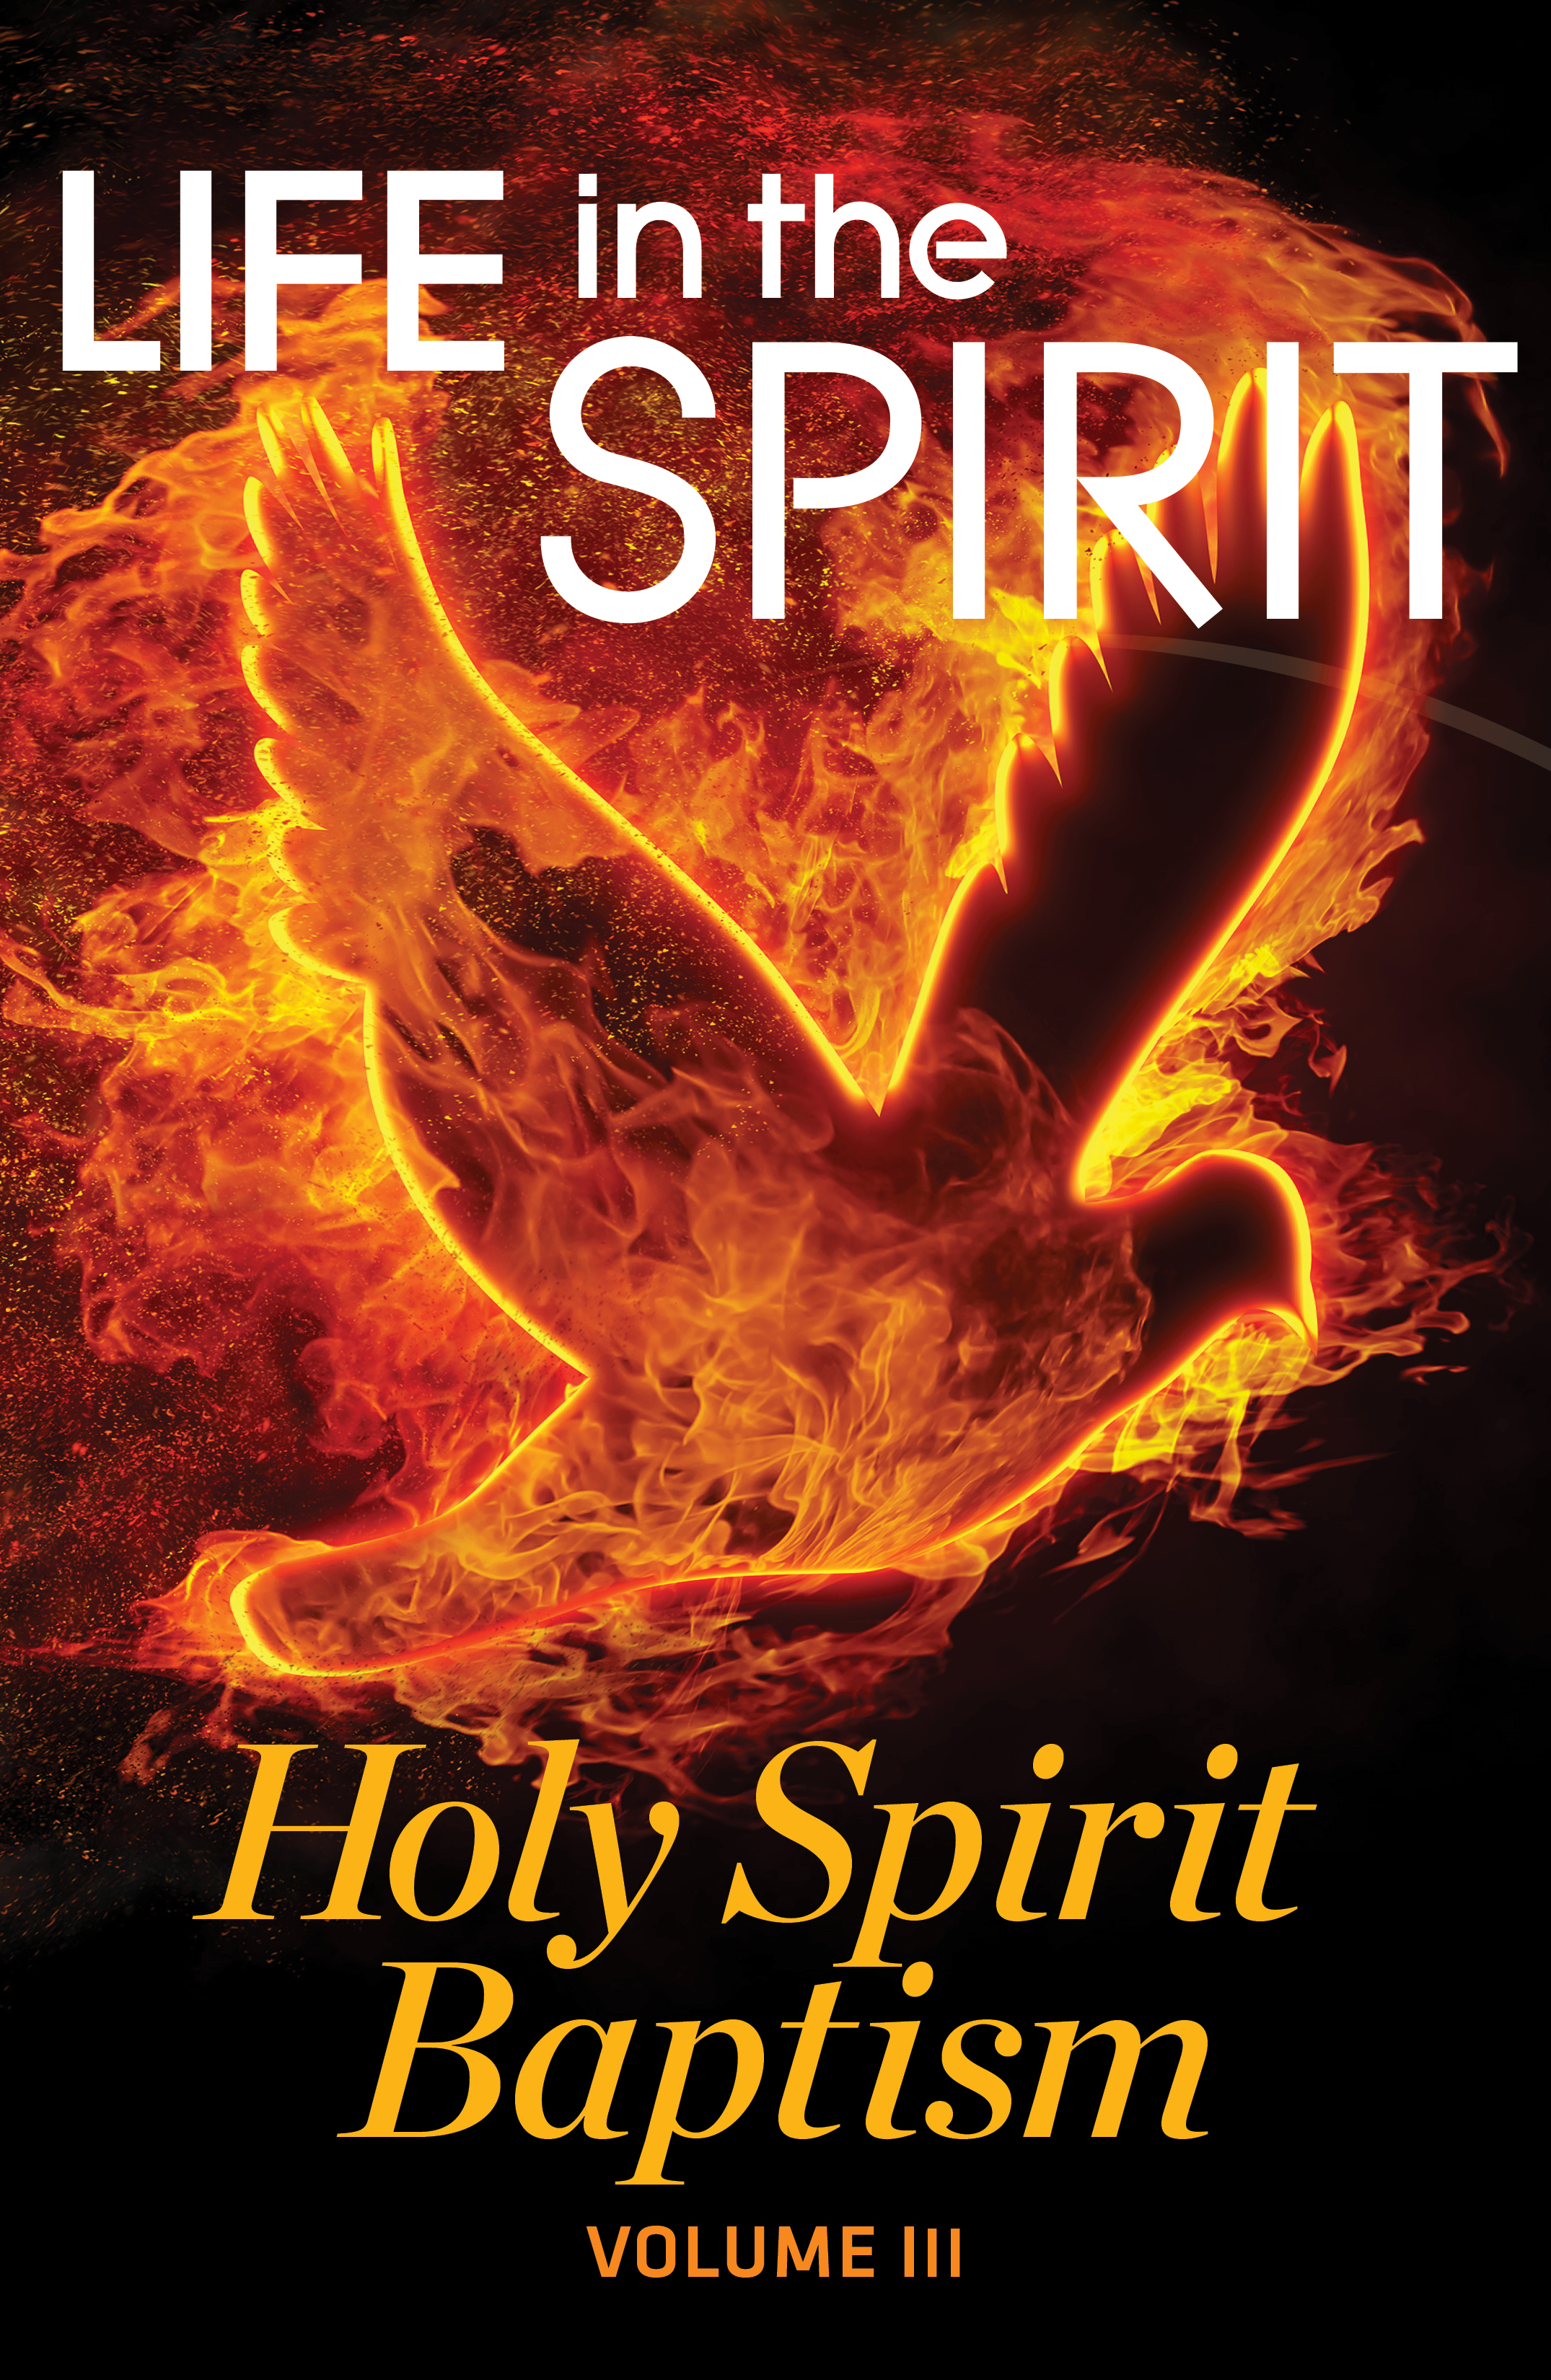 Babtism Holy Spirit Fire - HD Wallpaper 